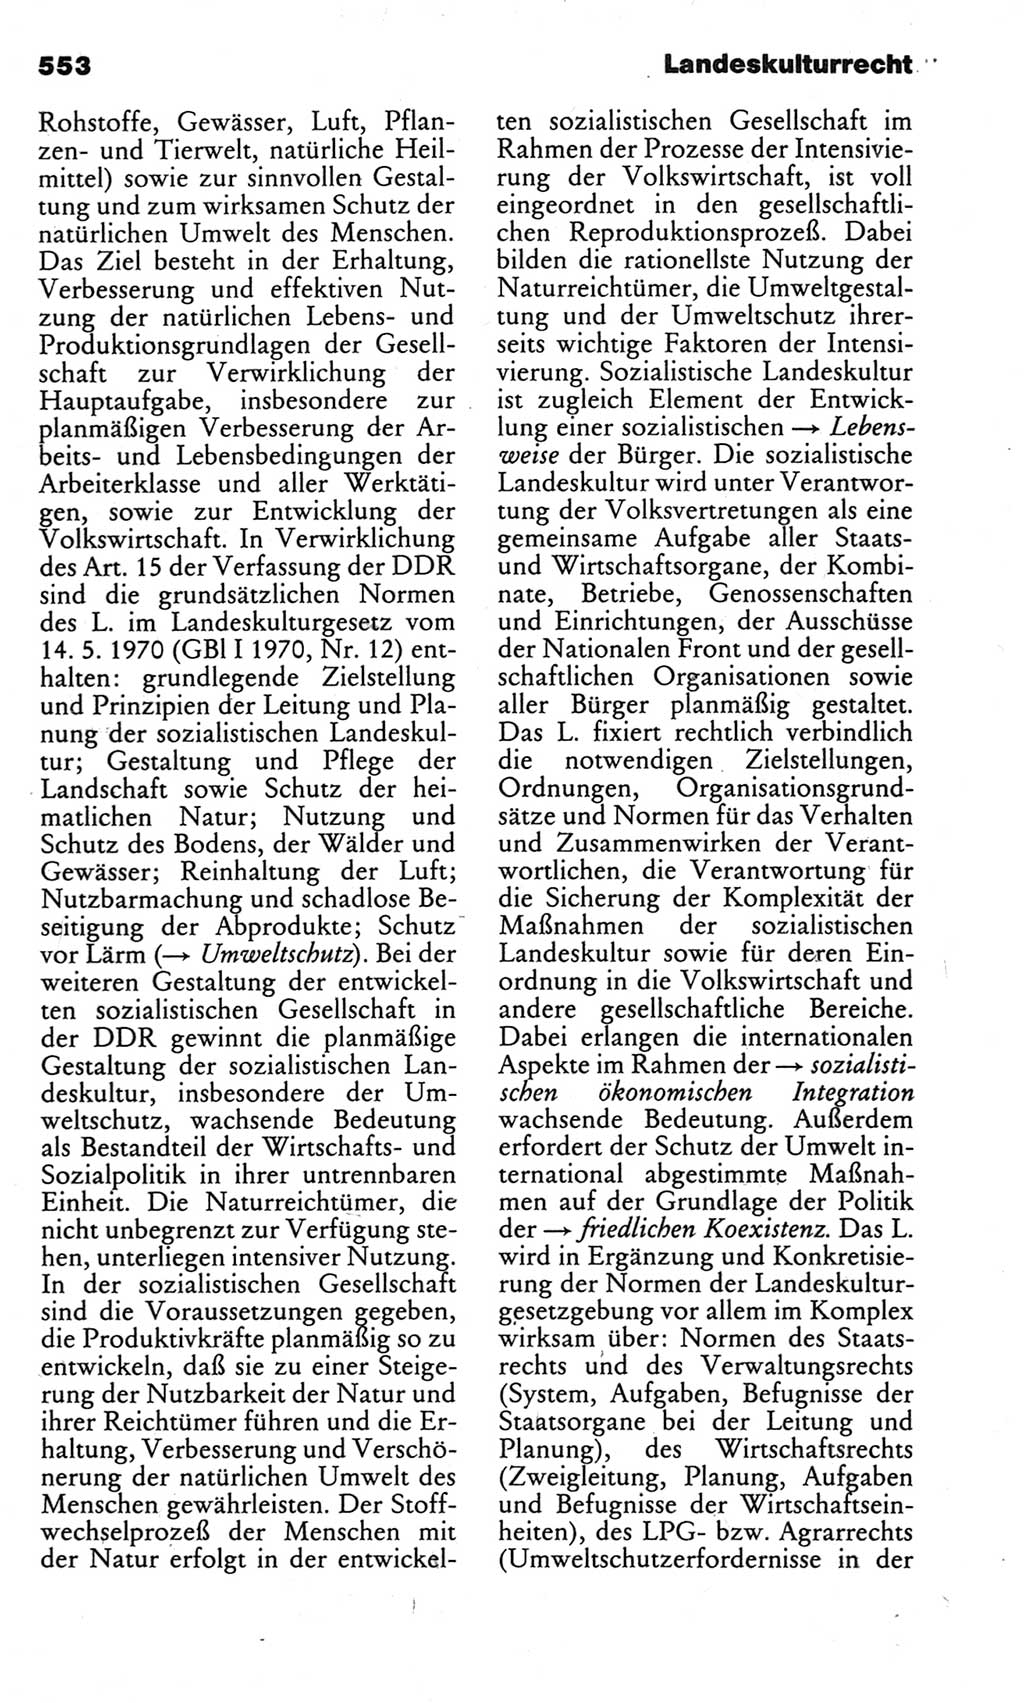 Kleines politisches Wörterbuch [Deutsche Demokratische Republik (DDR)] 1983, Seite 553 (Kl. pol. Wb. DDR 1983, S. 553)